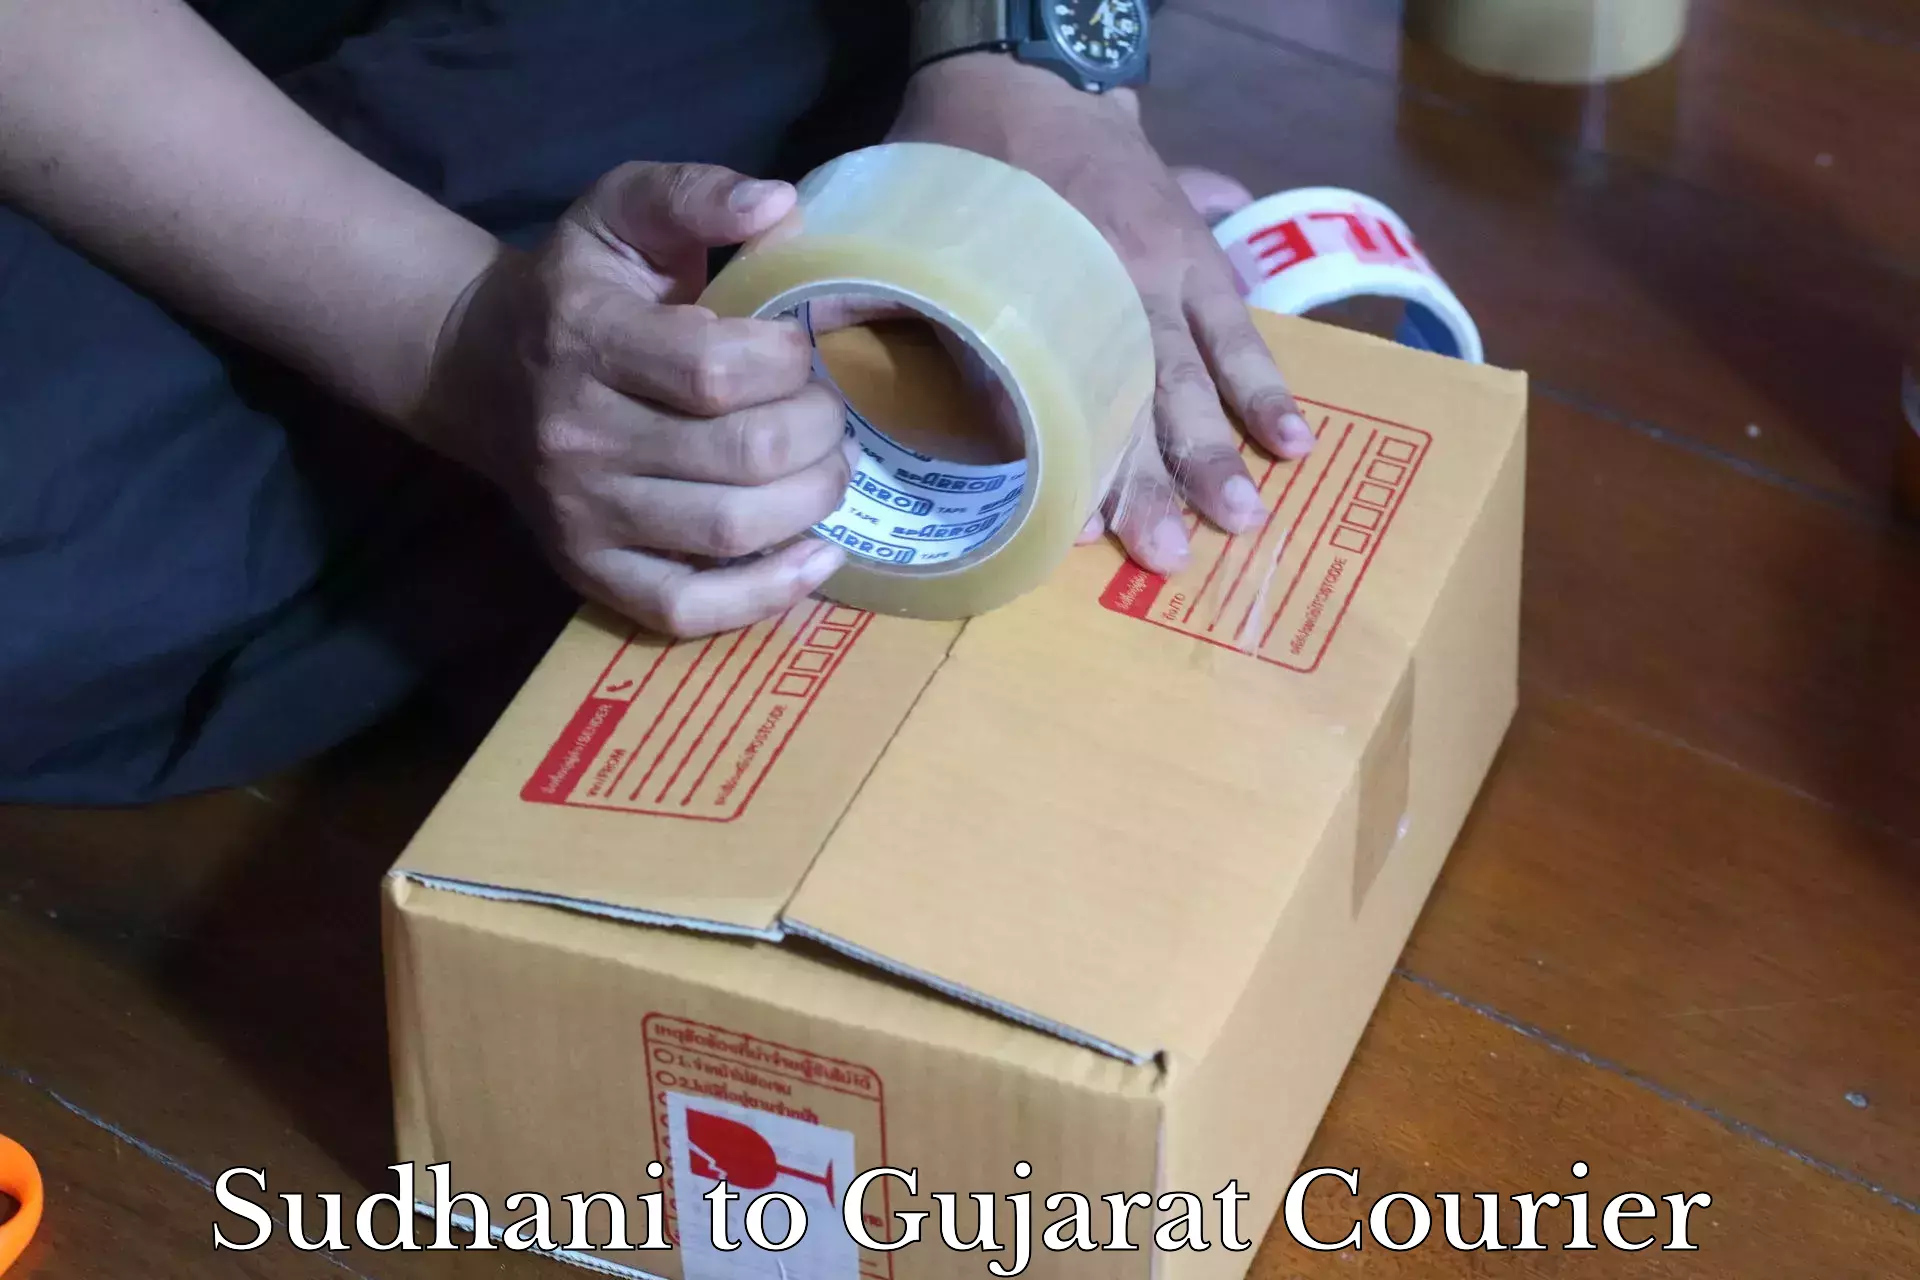 Shipping and handling Sudhani to Himatnagar